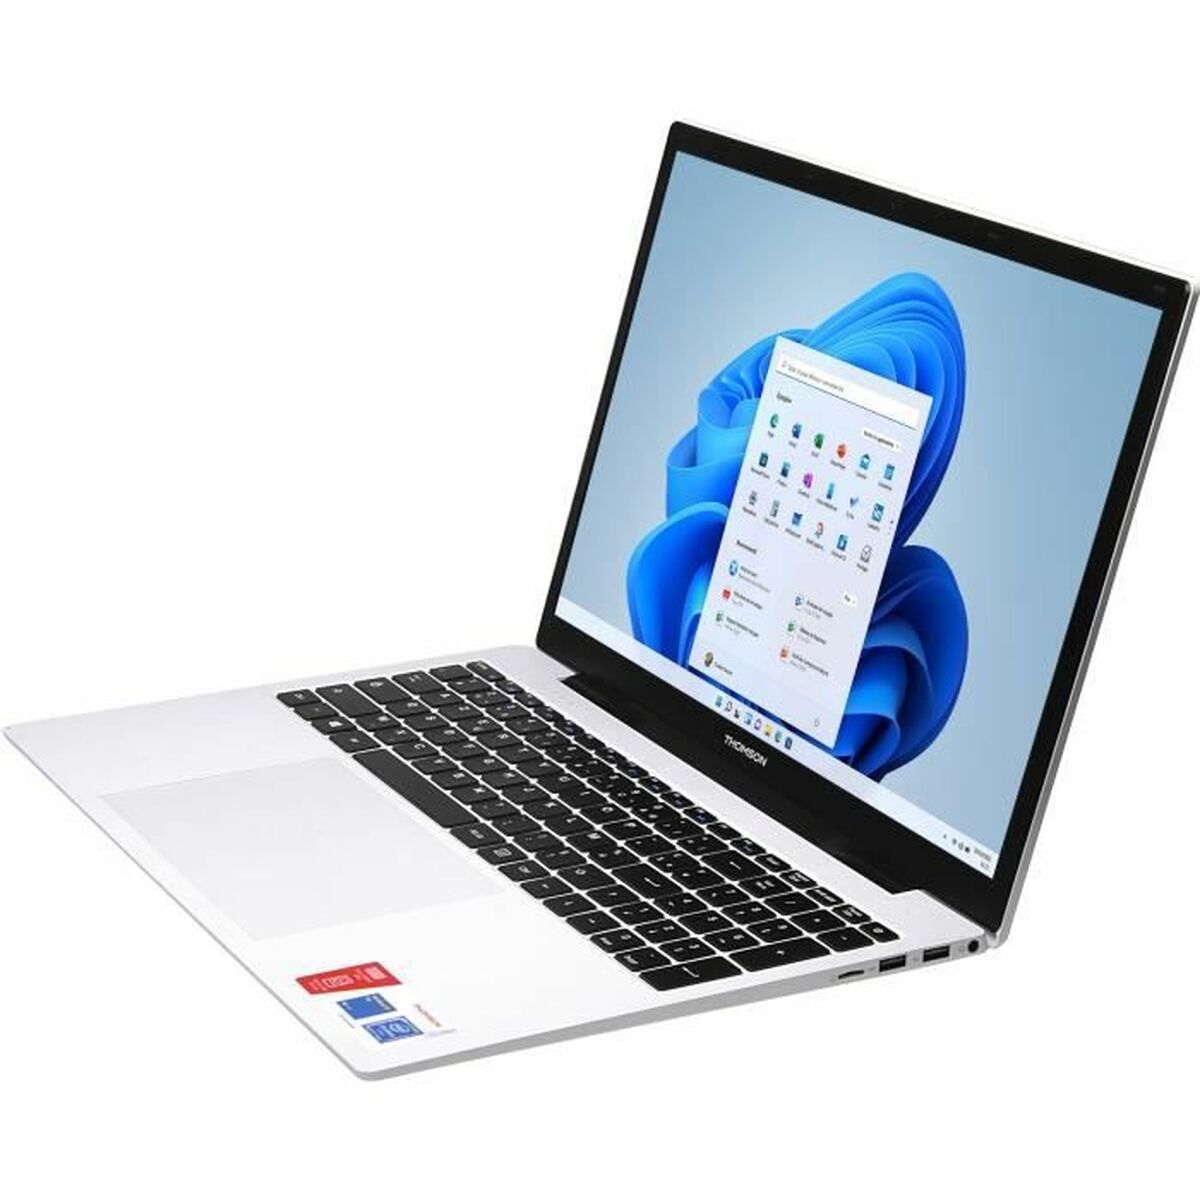 Osta tuote Laptop Thomson TH17V2C4WH128 Intel Celeron N4020 4 GB RAM 128 GB SSD Azerty Ranska Valkoinen AZERTY verkkokaupastamme Korhone: Tietokoneet & Elektroniikka 20% alennuksella koodilla VIIKONLOPPU